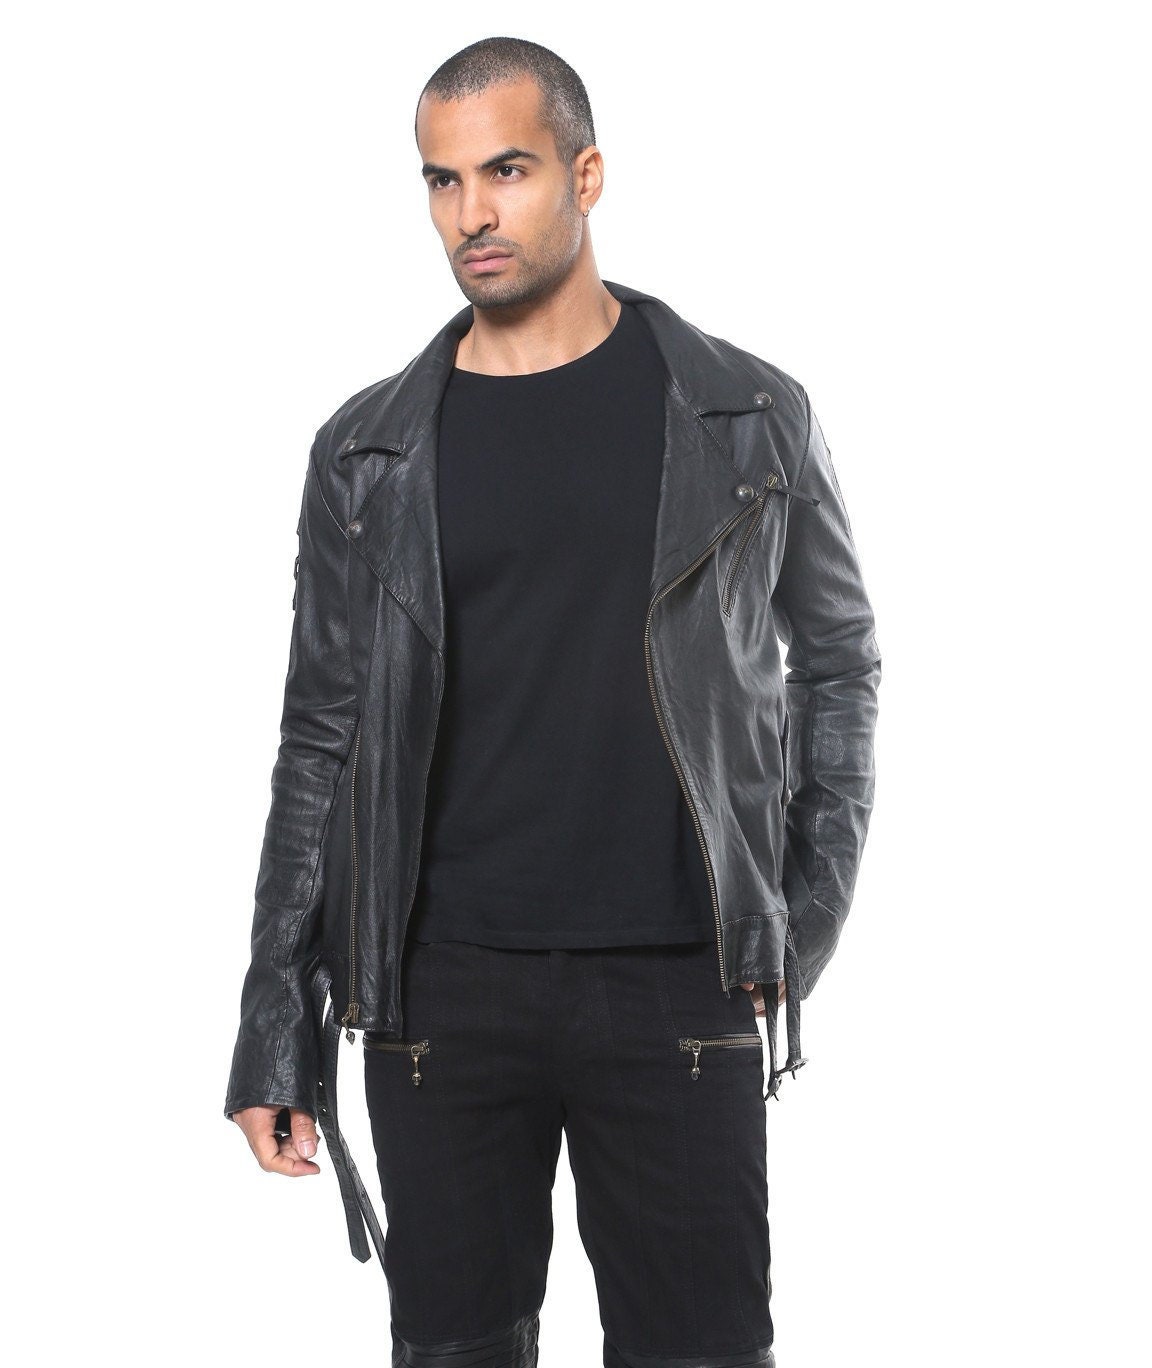 FALCON Men's Moto Jacket Black Leather Jacket - Etsy